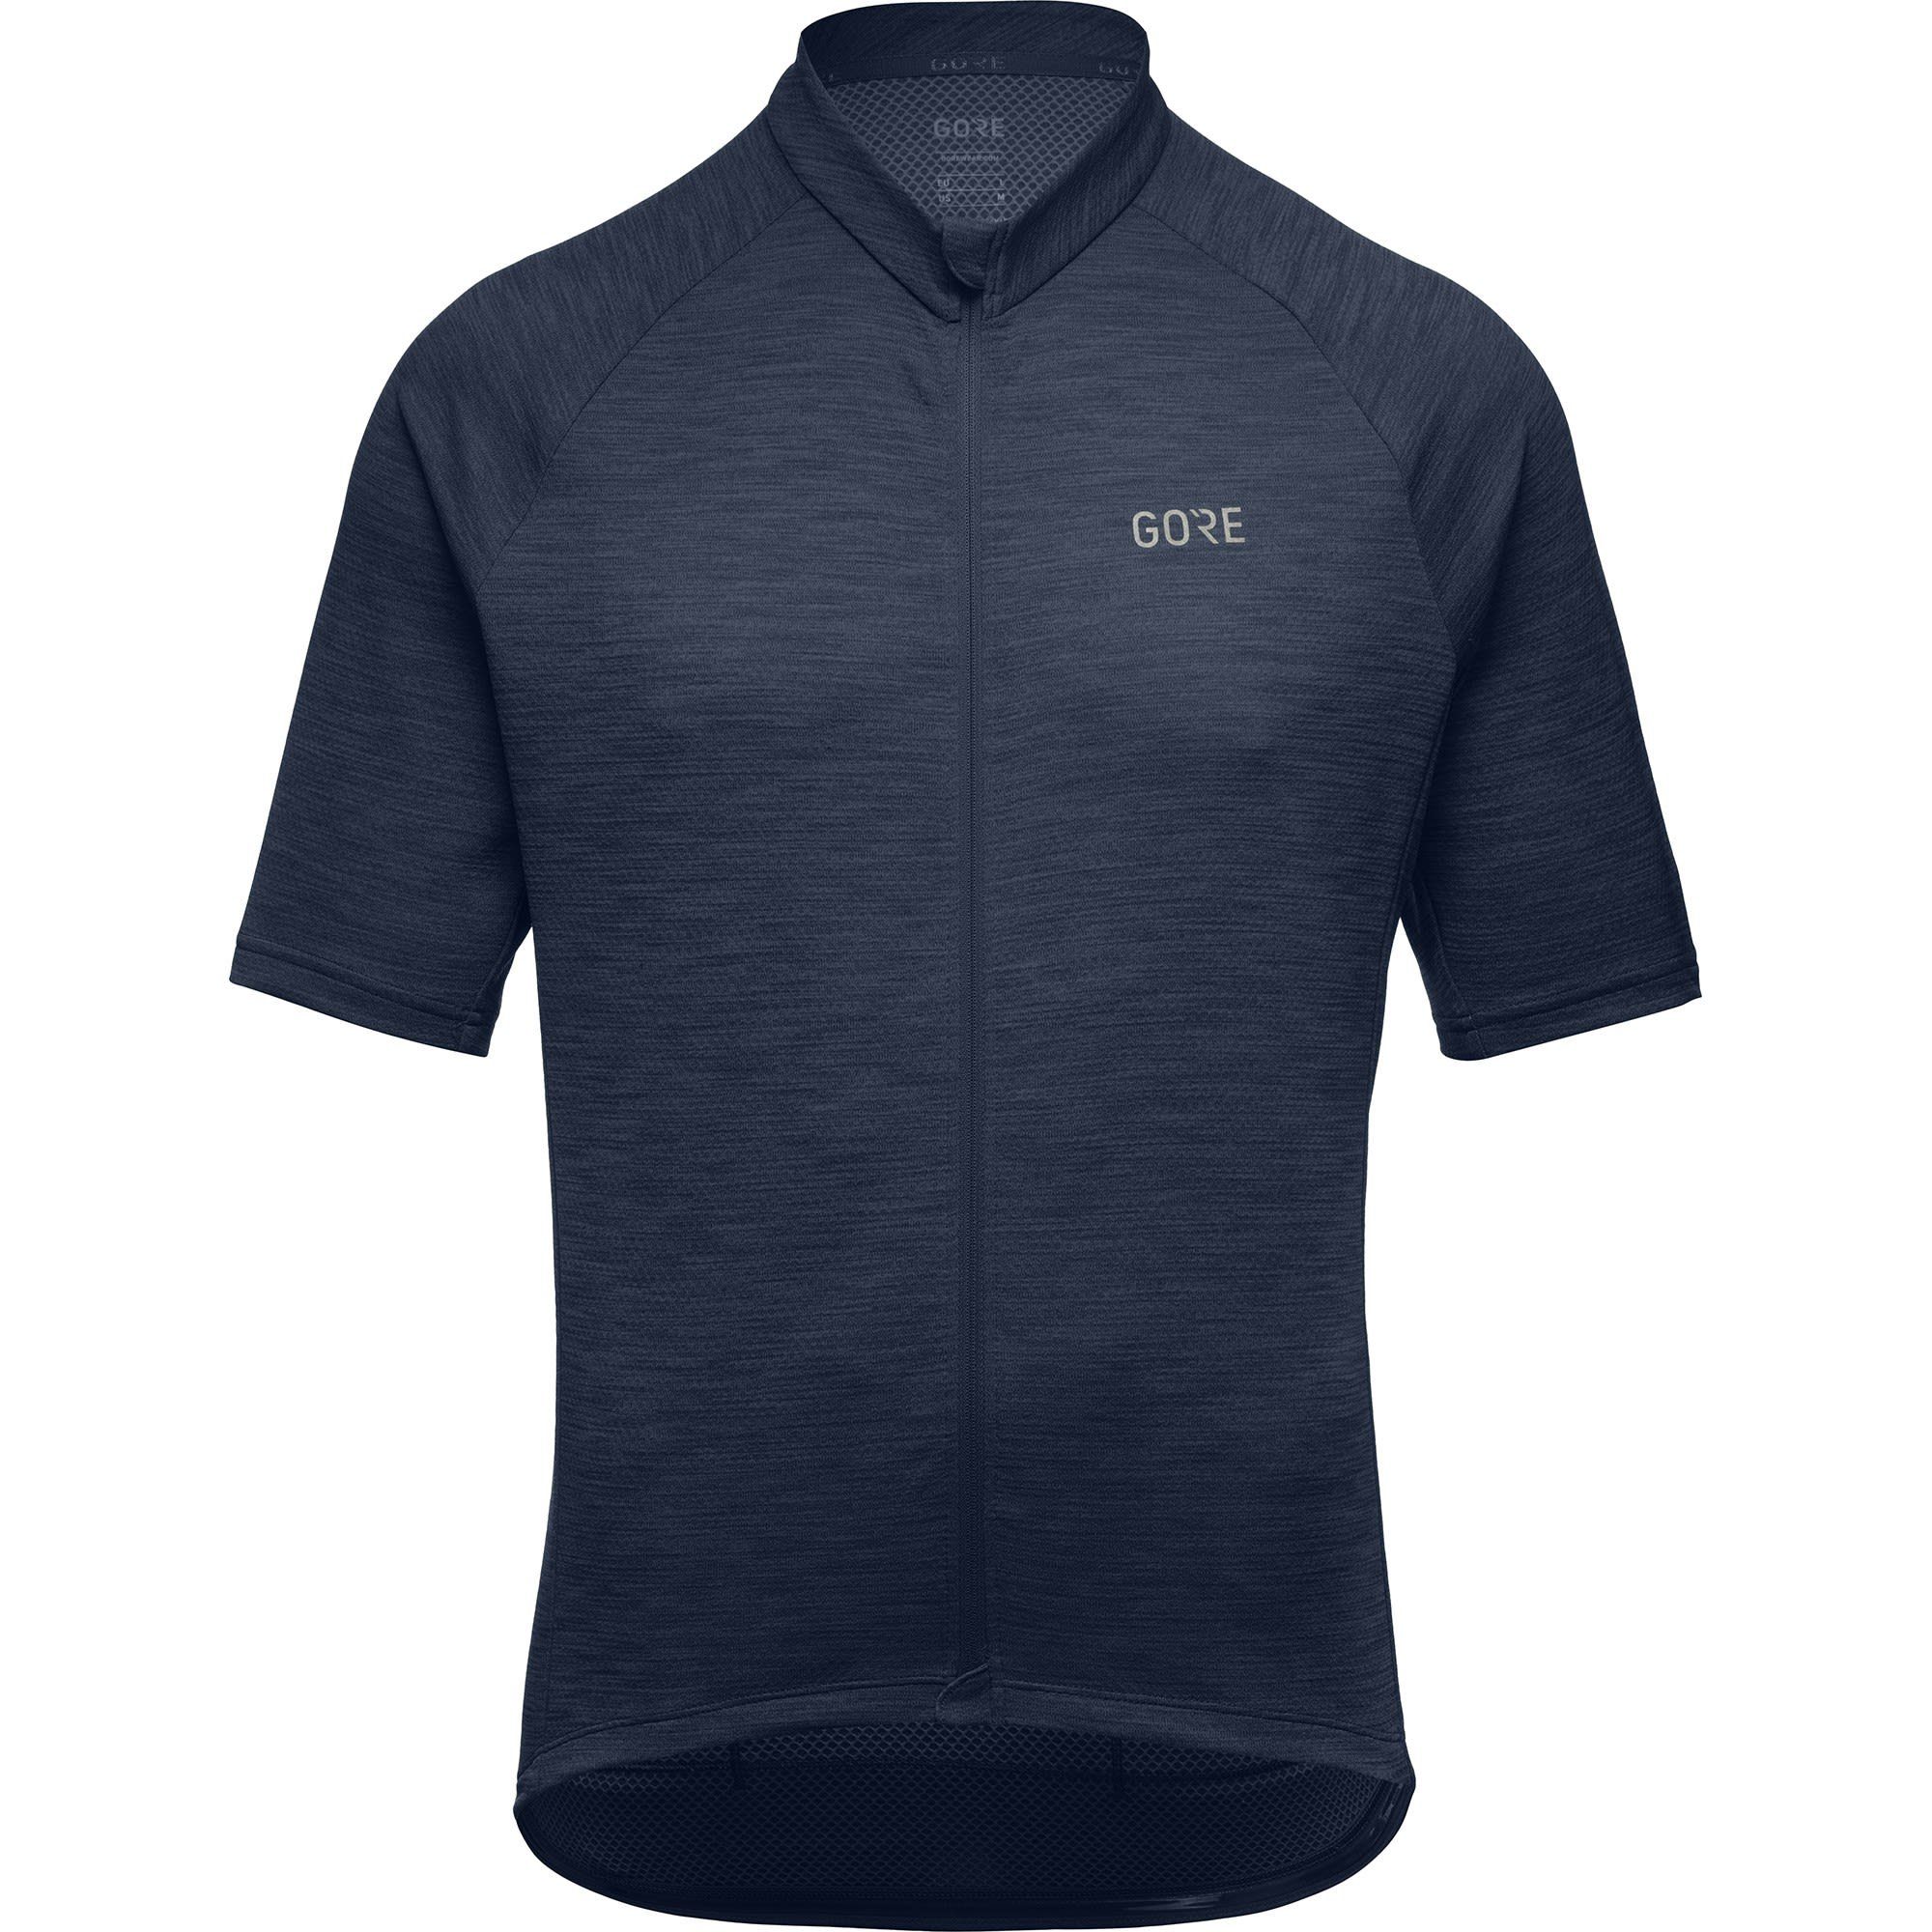 Wear Orbit Herren Blue Gore T-Shirt Jersey GORE® M Kurzarm-Shirt C3